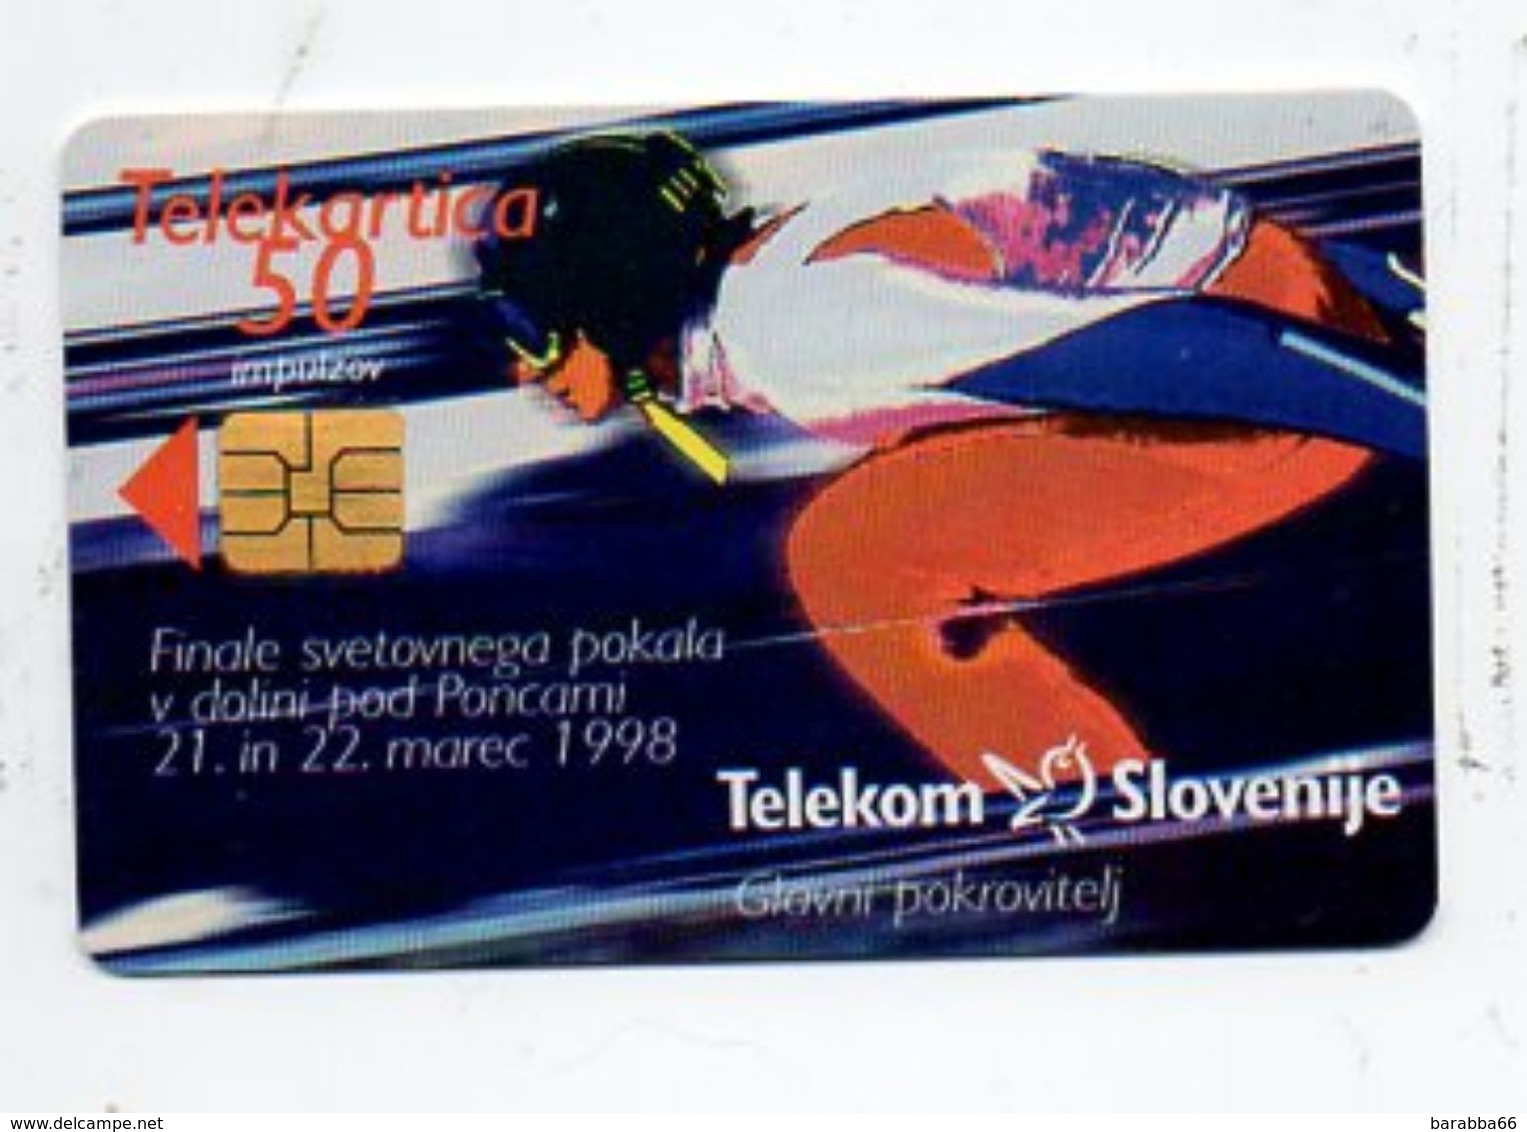 Telekom Slovenije 50 Imp. Phonecard - Slovenia